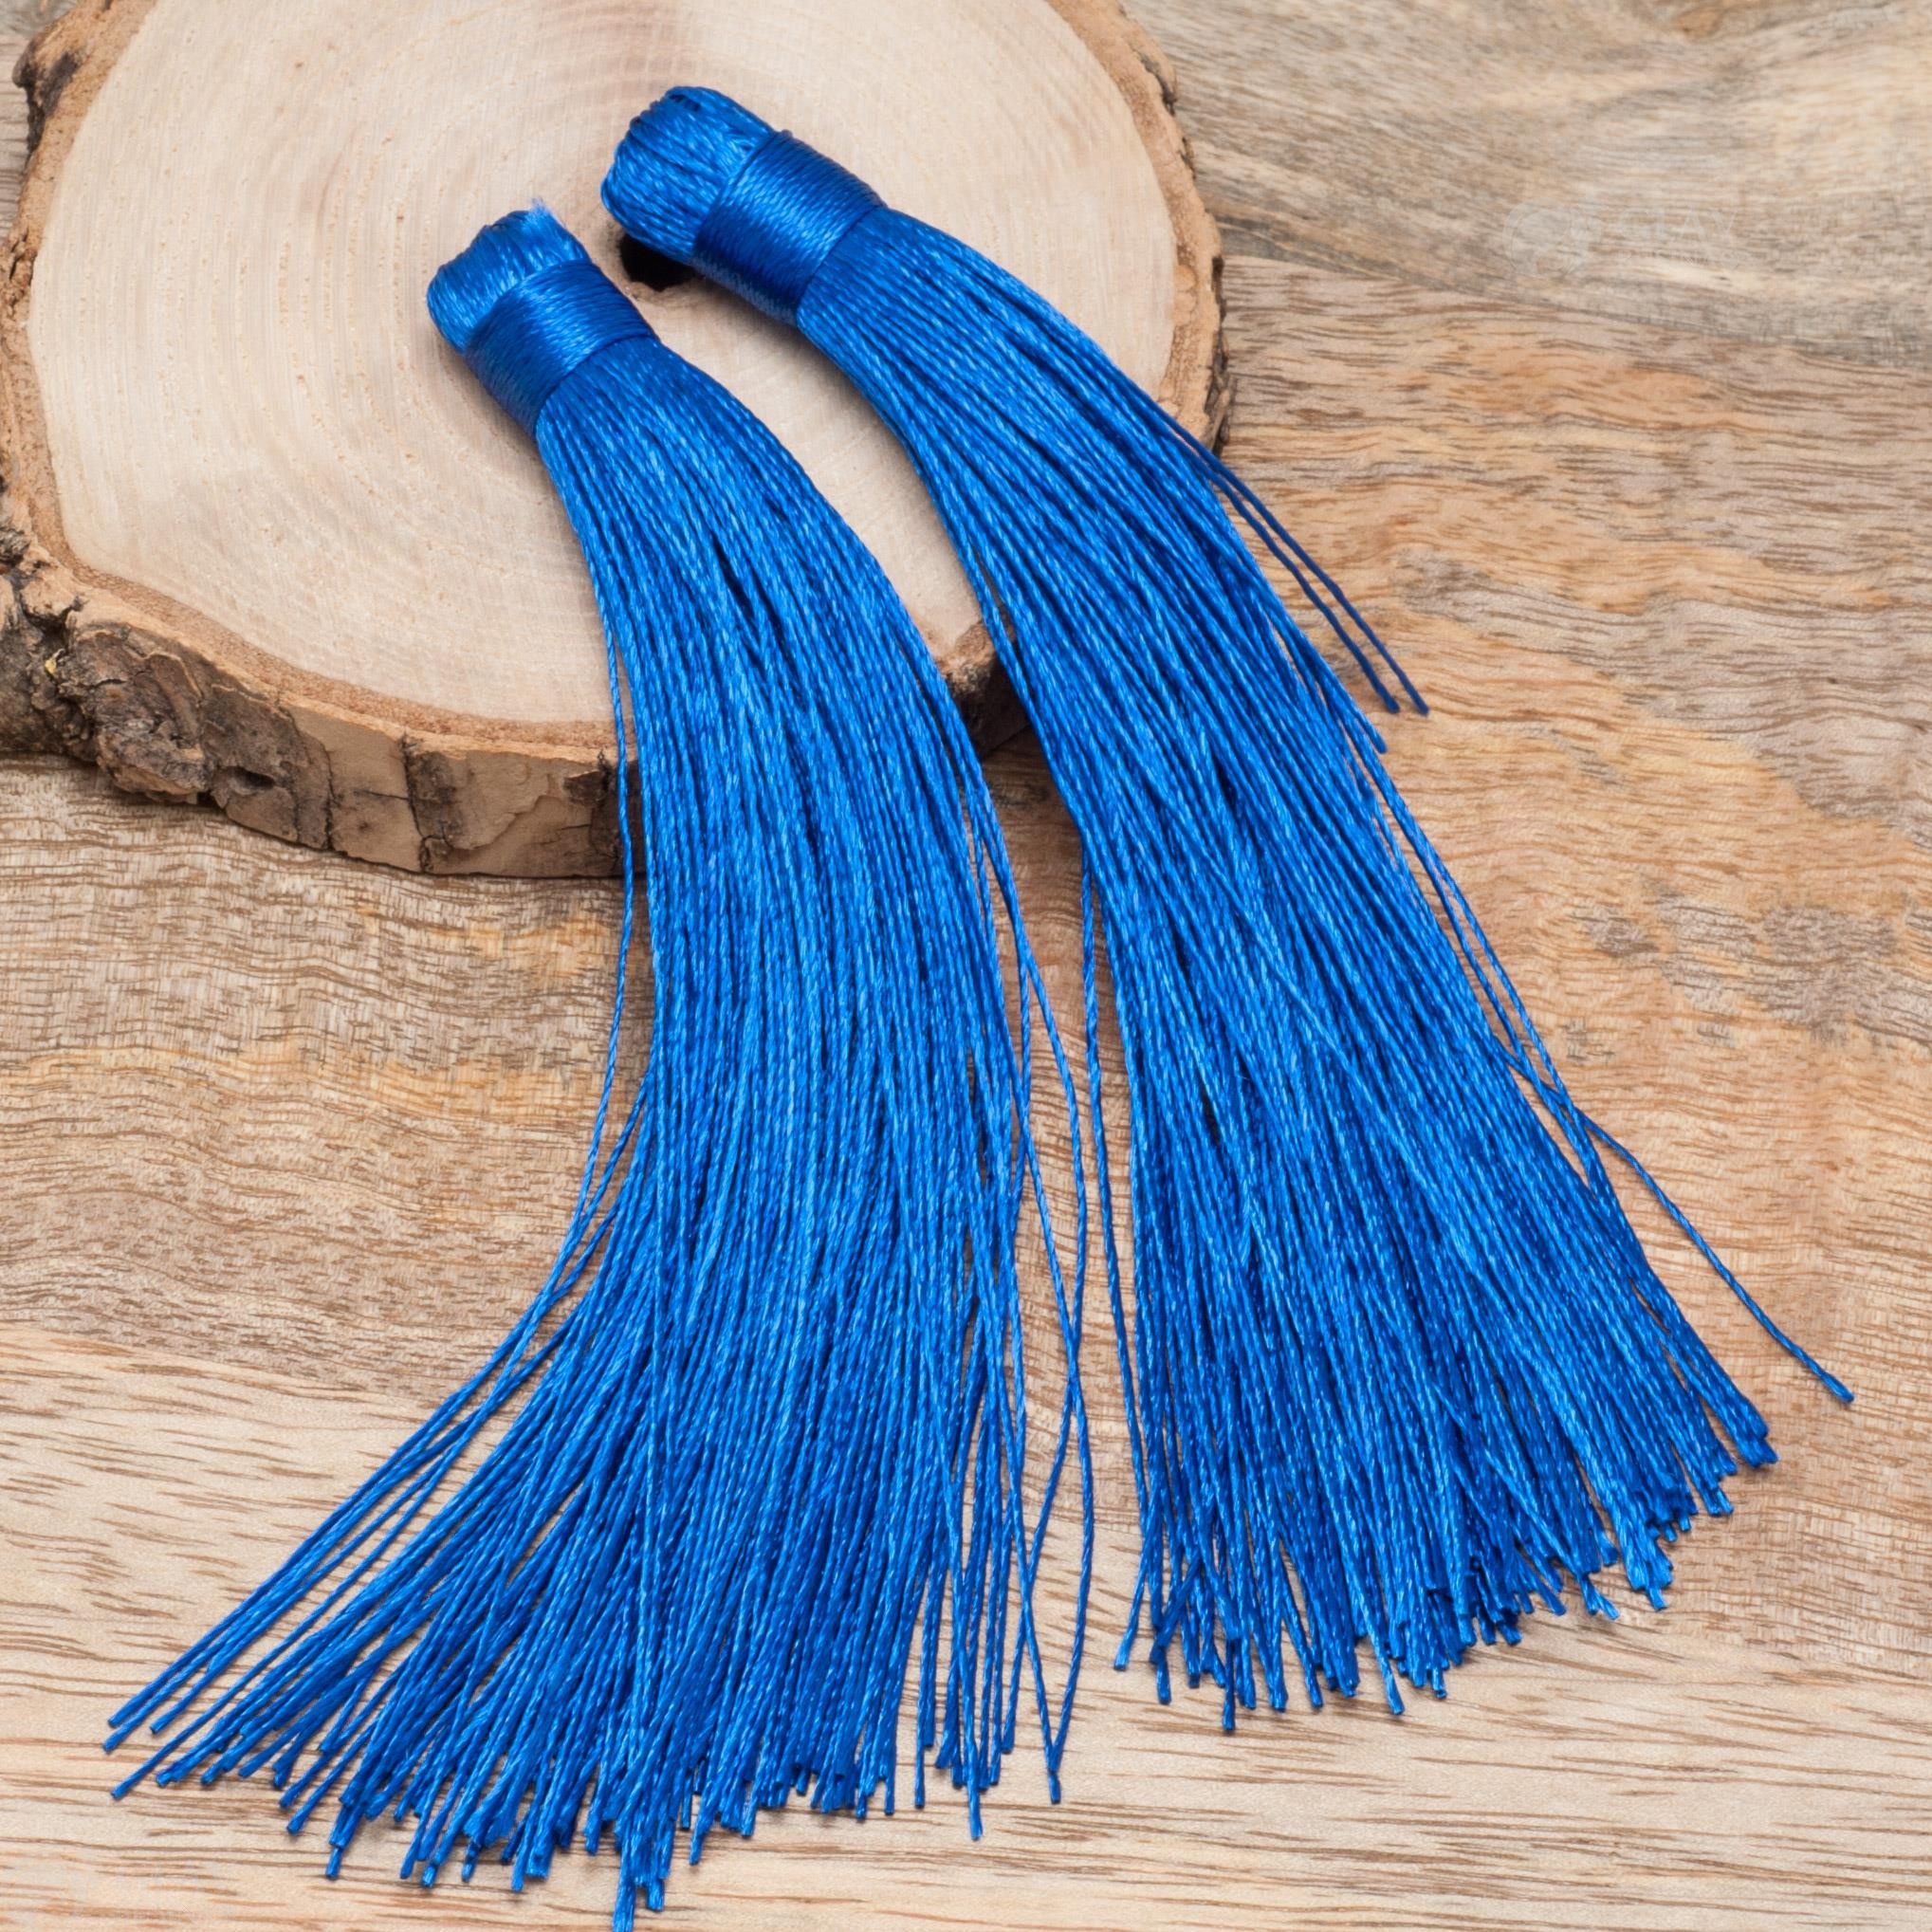 Большая декоративная кисточка из блестящего синего нейлона, размером 12х1 см, многофункциональная для украшений и декора.